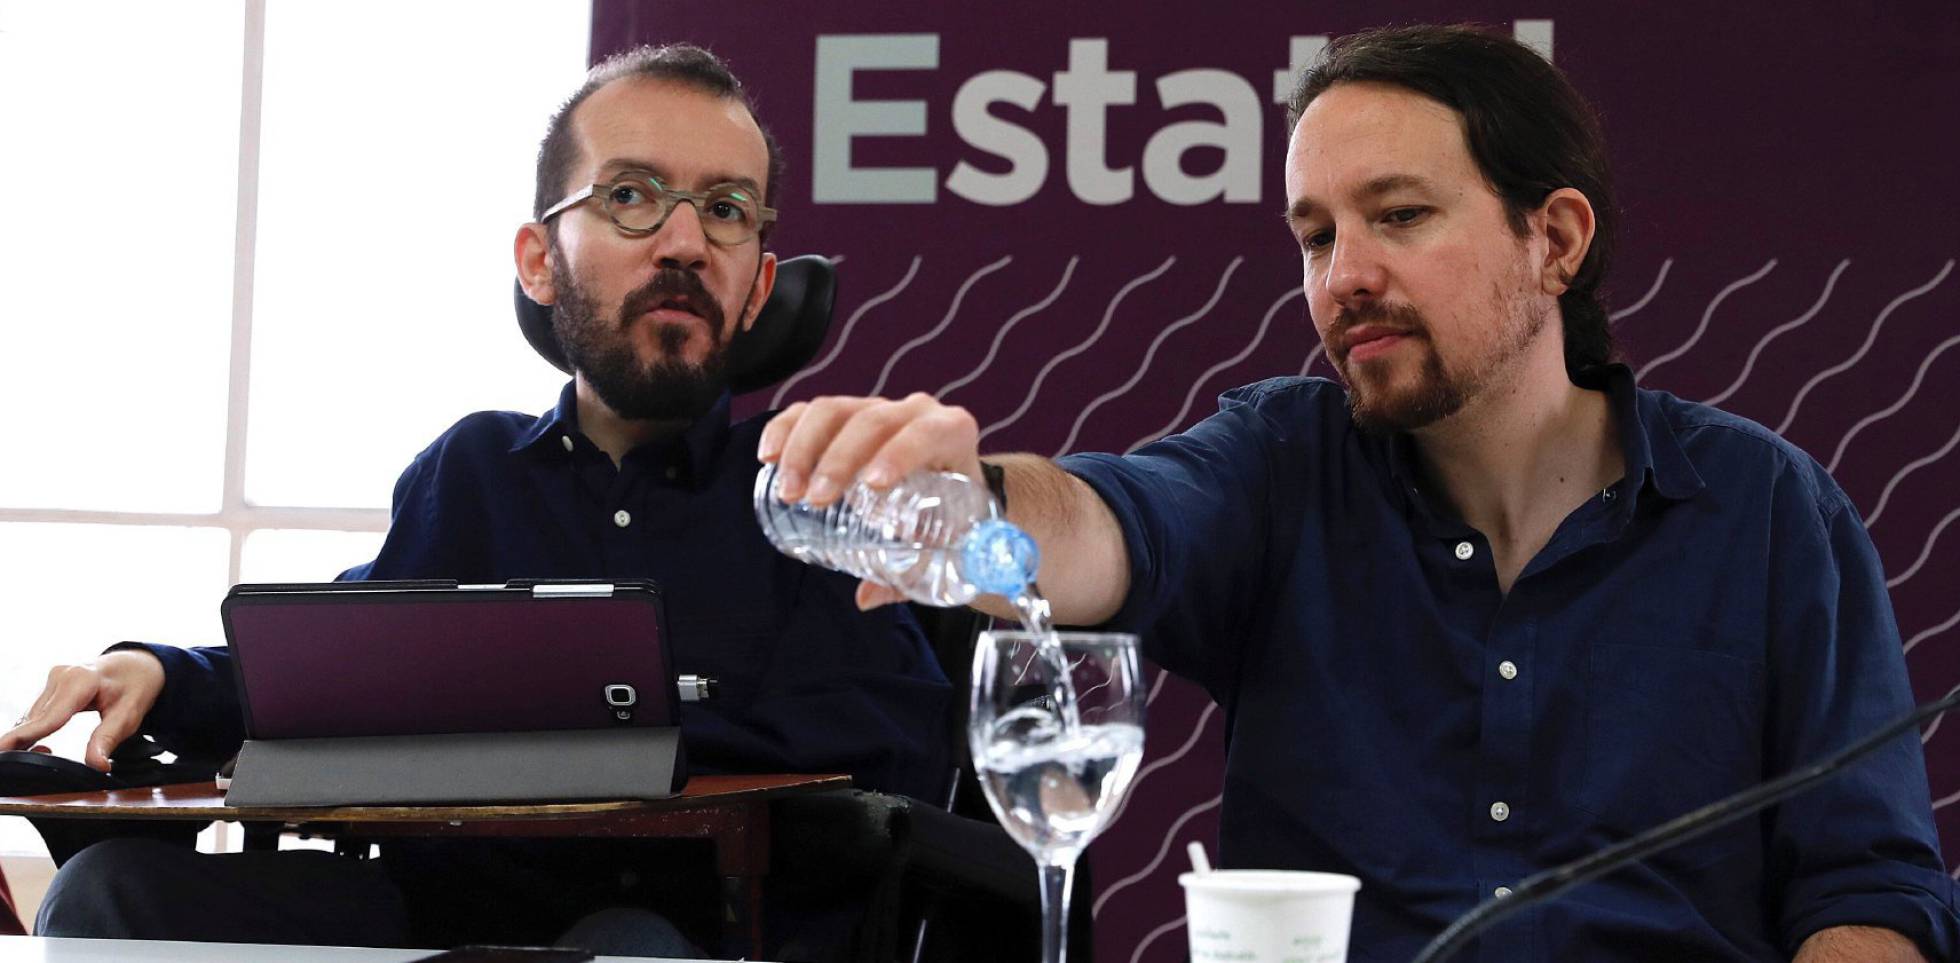 La dirección de Podemos se repliega tras el batacazo, mientras exdirigentes señalan errores y apuntan a Iglesias